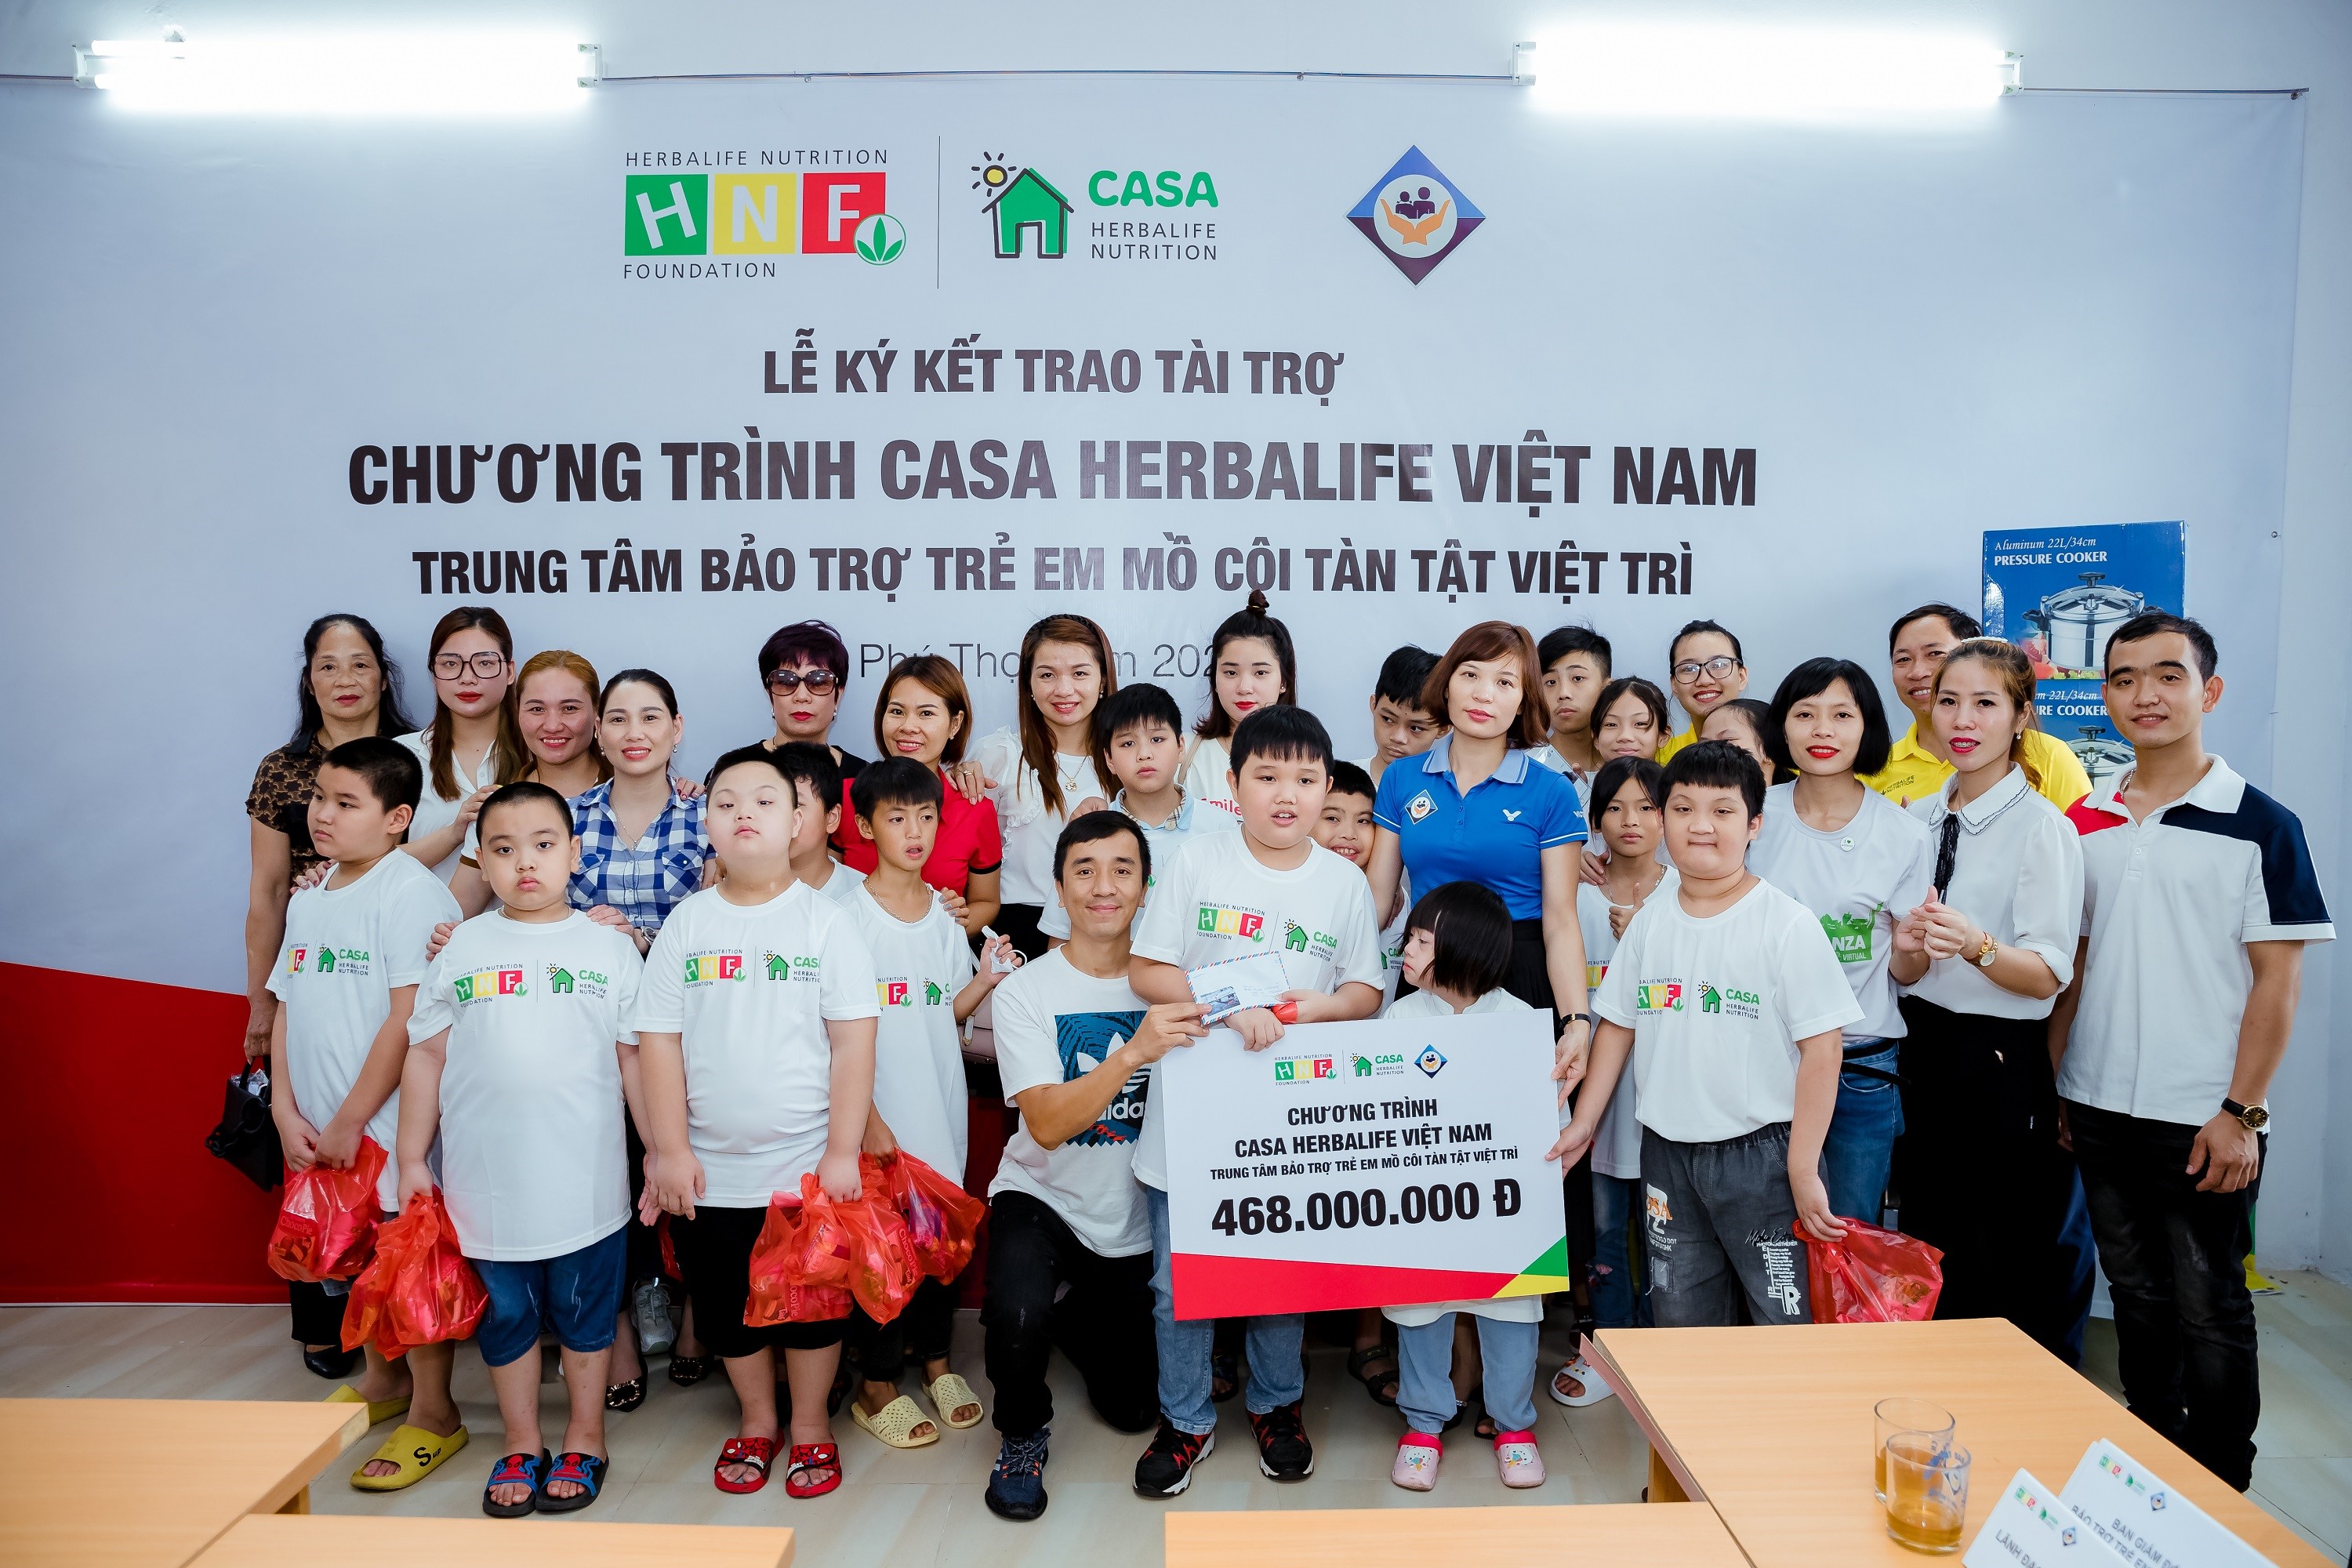 Herbalife Việt Nam hỗ trợ dinh dưỡng lành mạnh cho trẻ em có hoàn cảnh khó khăn tại Trung tâm Bảo trợ Trẻ em mồ côi tàn tật Việt Trì - 2